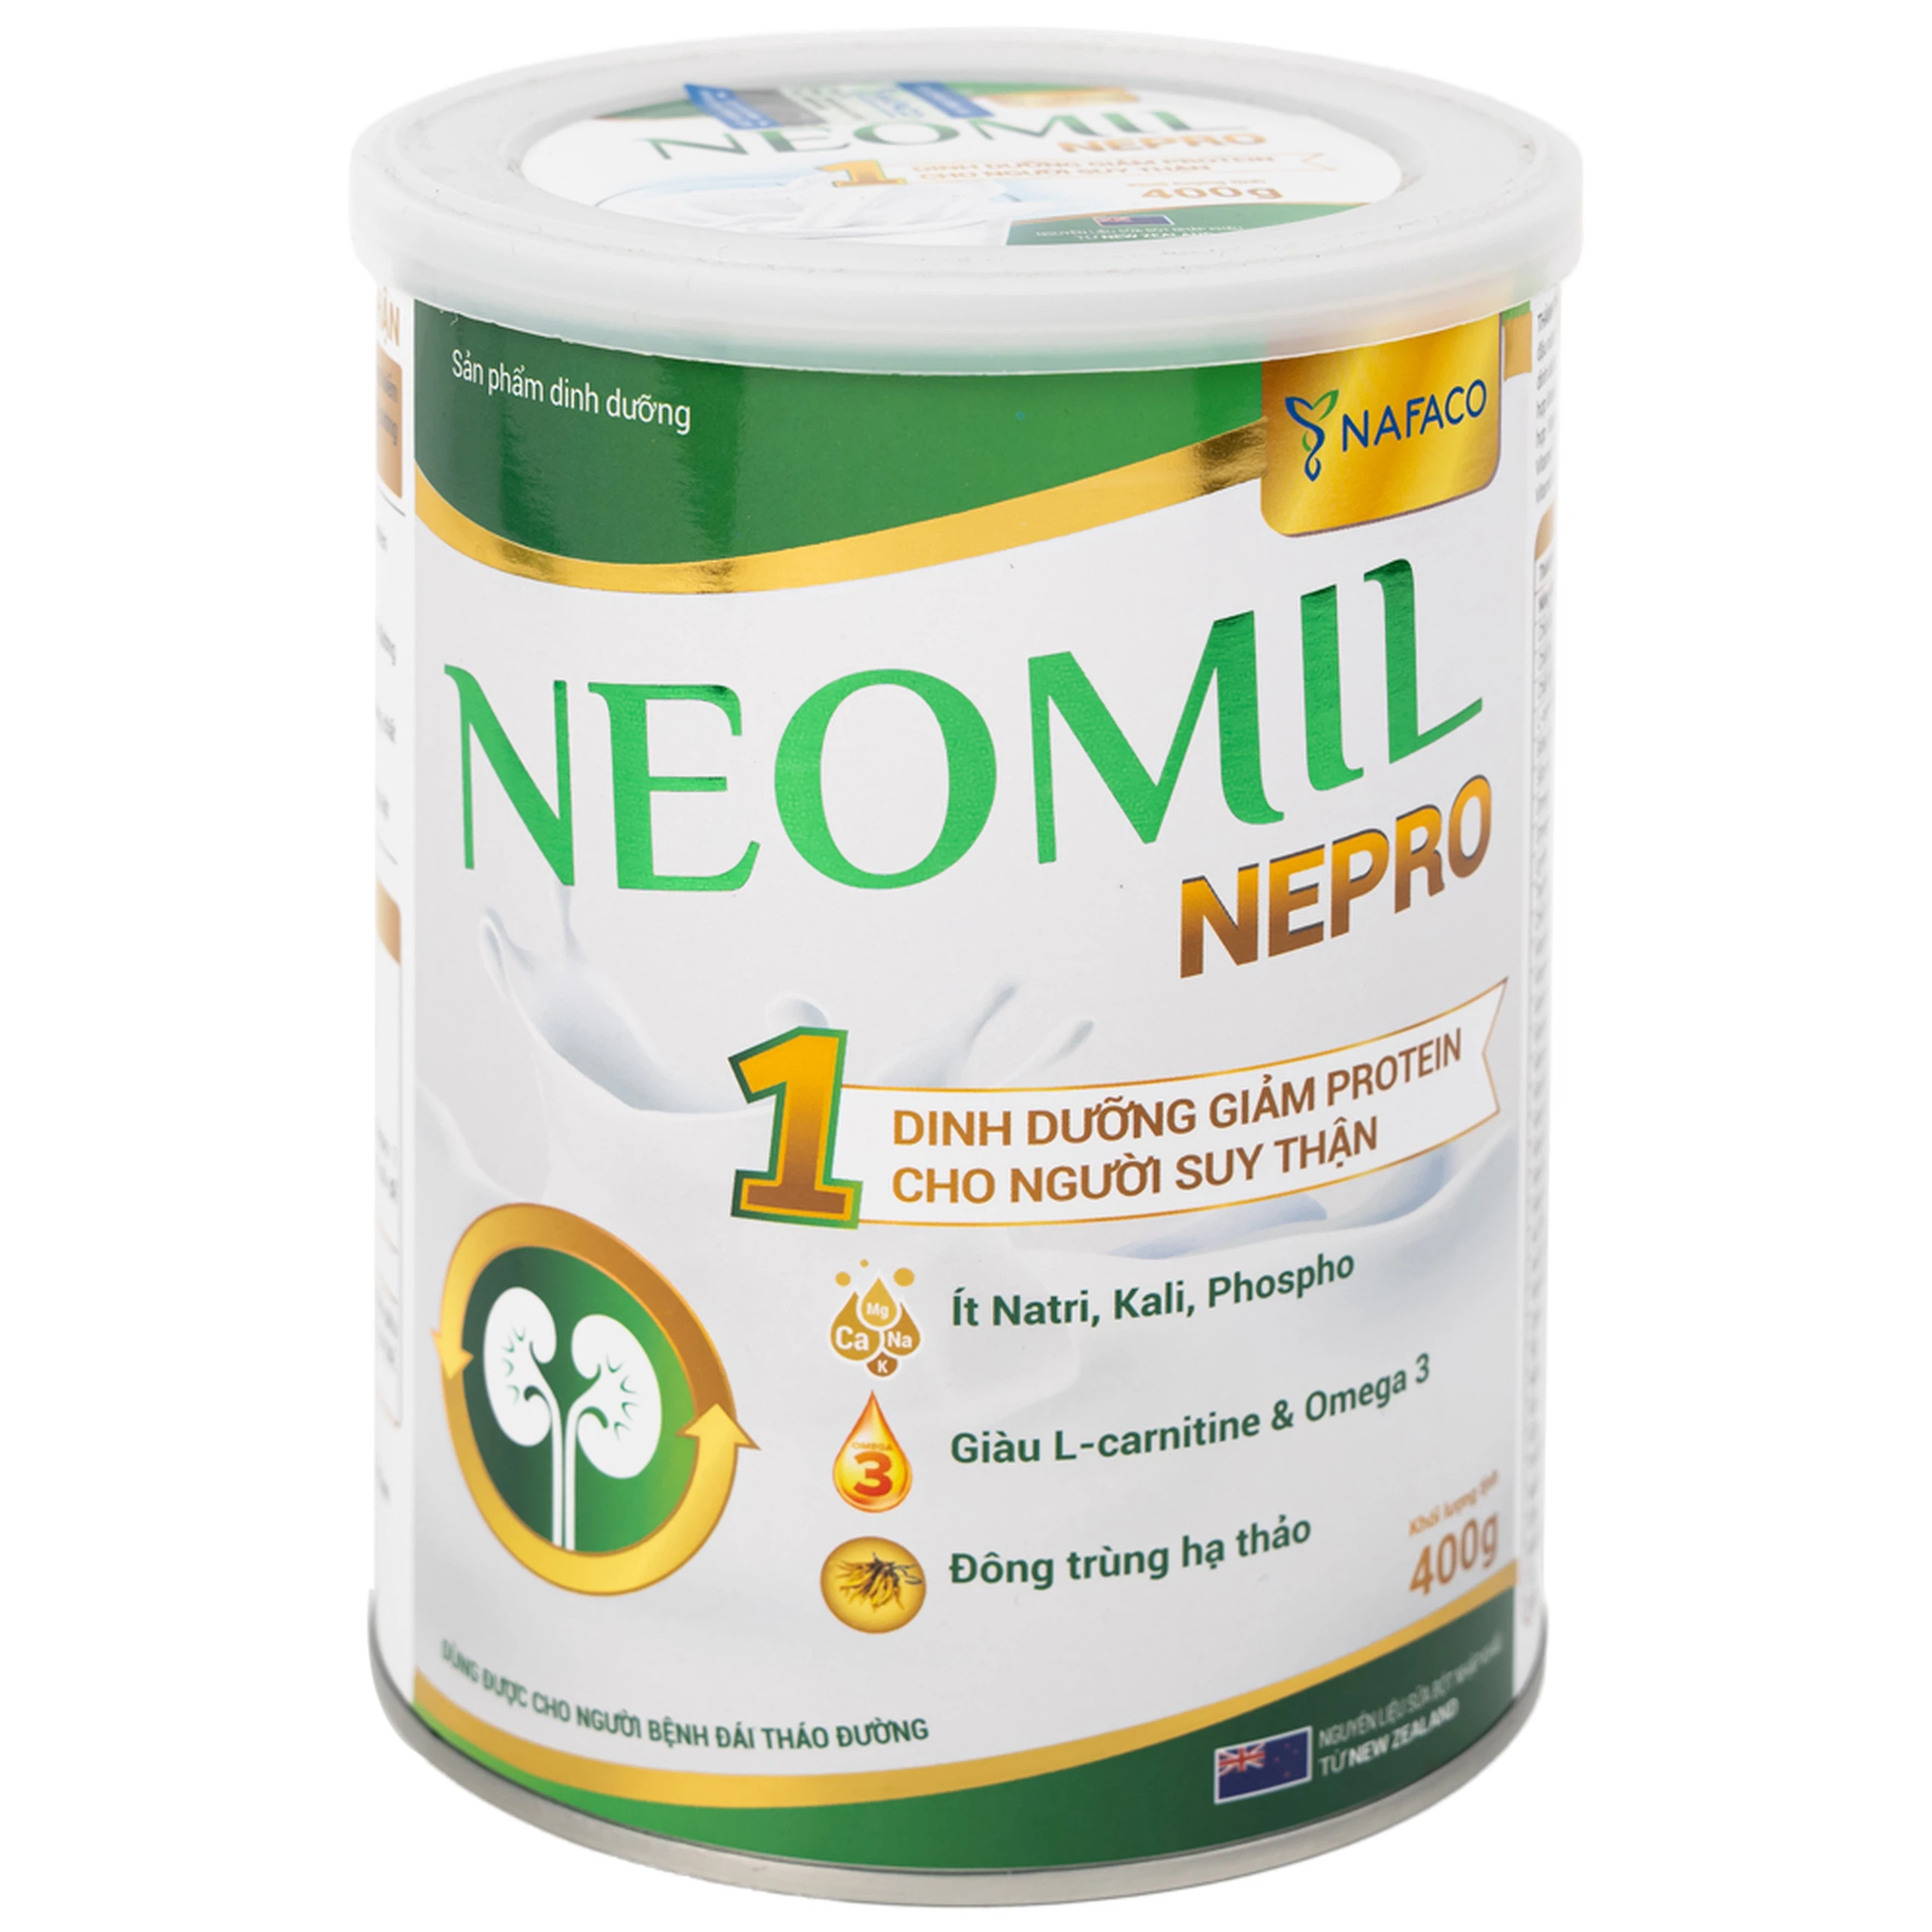 Sữa bột Neomil Nepro 400g Nafaco dùng cho người bệnh đái tháo đường 